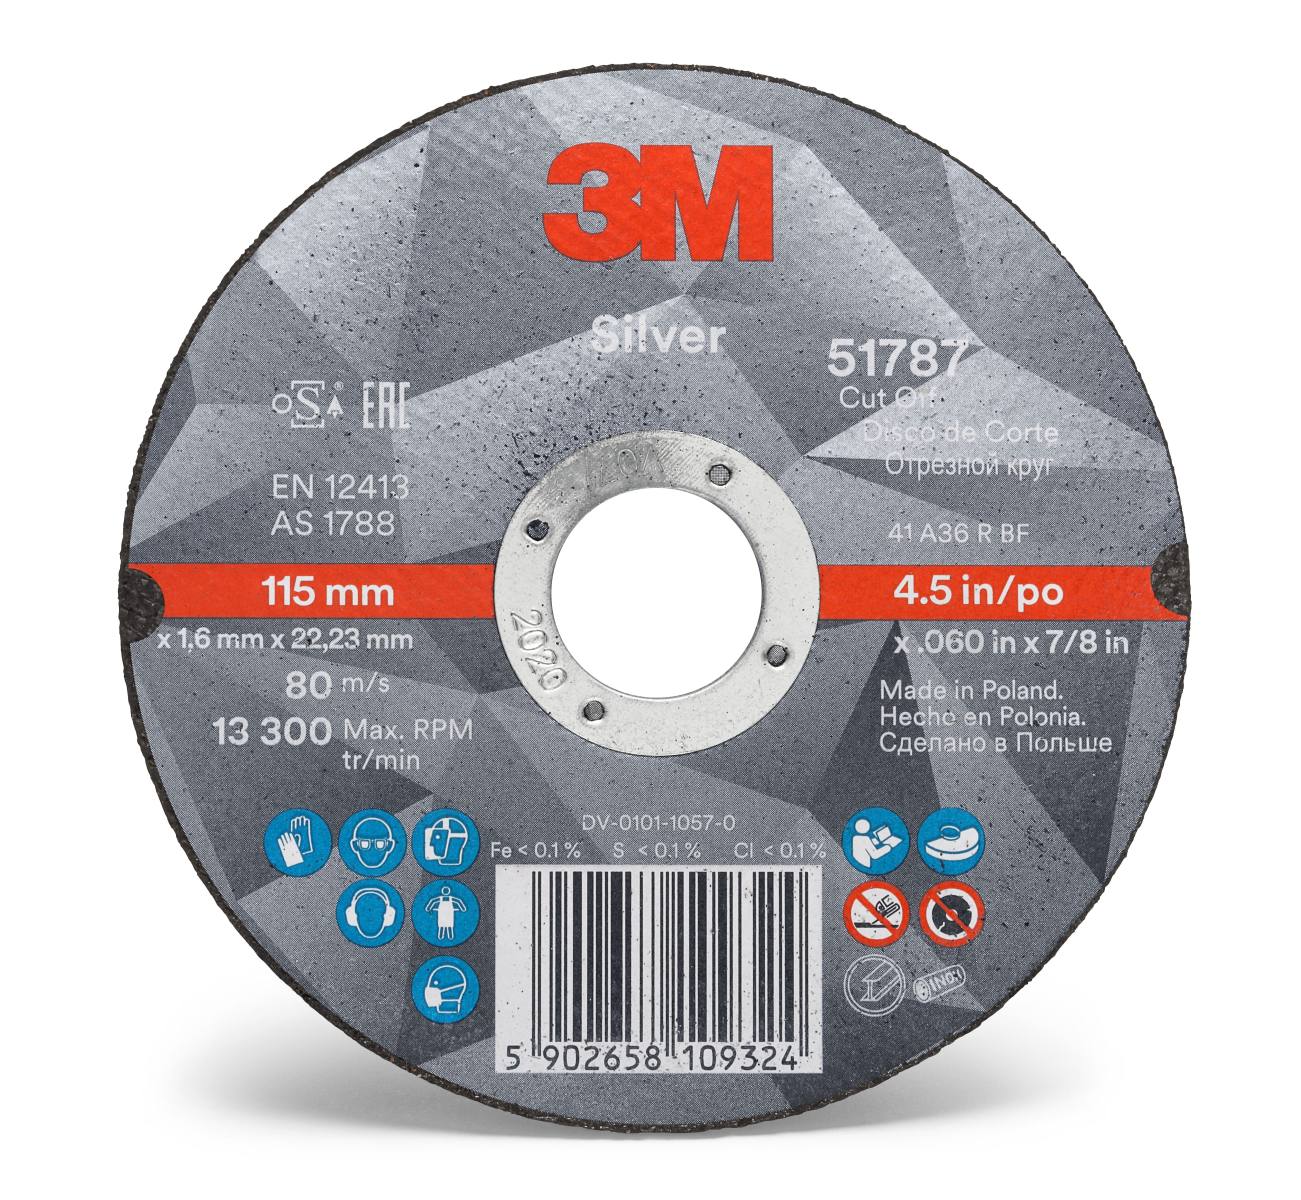 3M Silver Cut-Off Wheel cutting-off wheel, 100 mm, 1.0 mm, 6 mm, T41, 51771